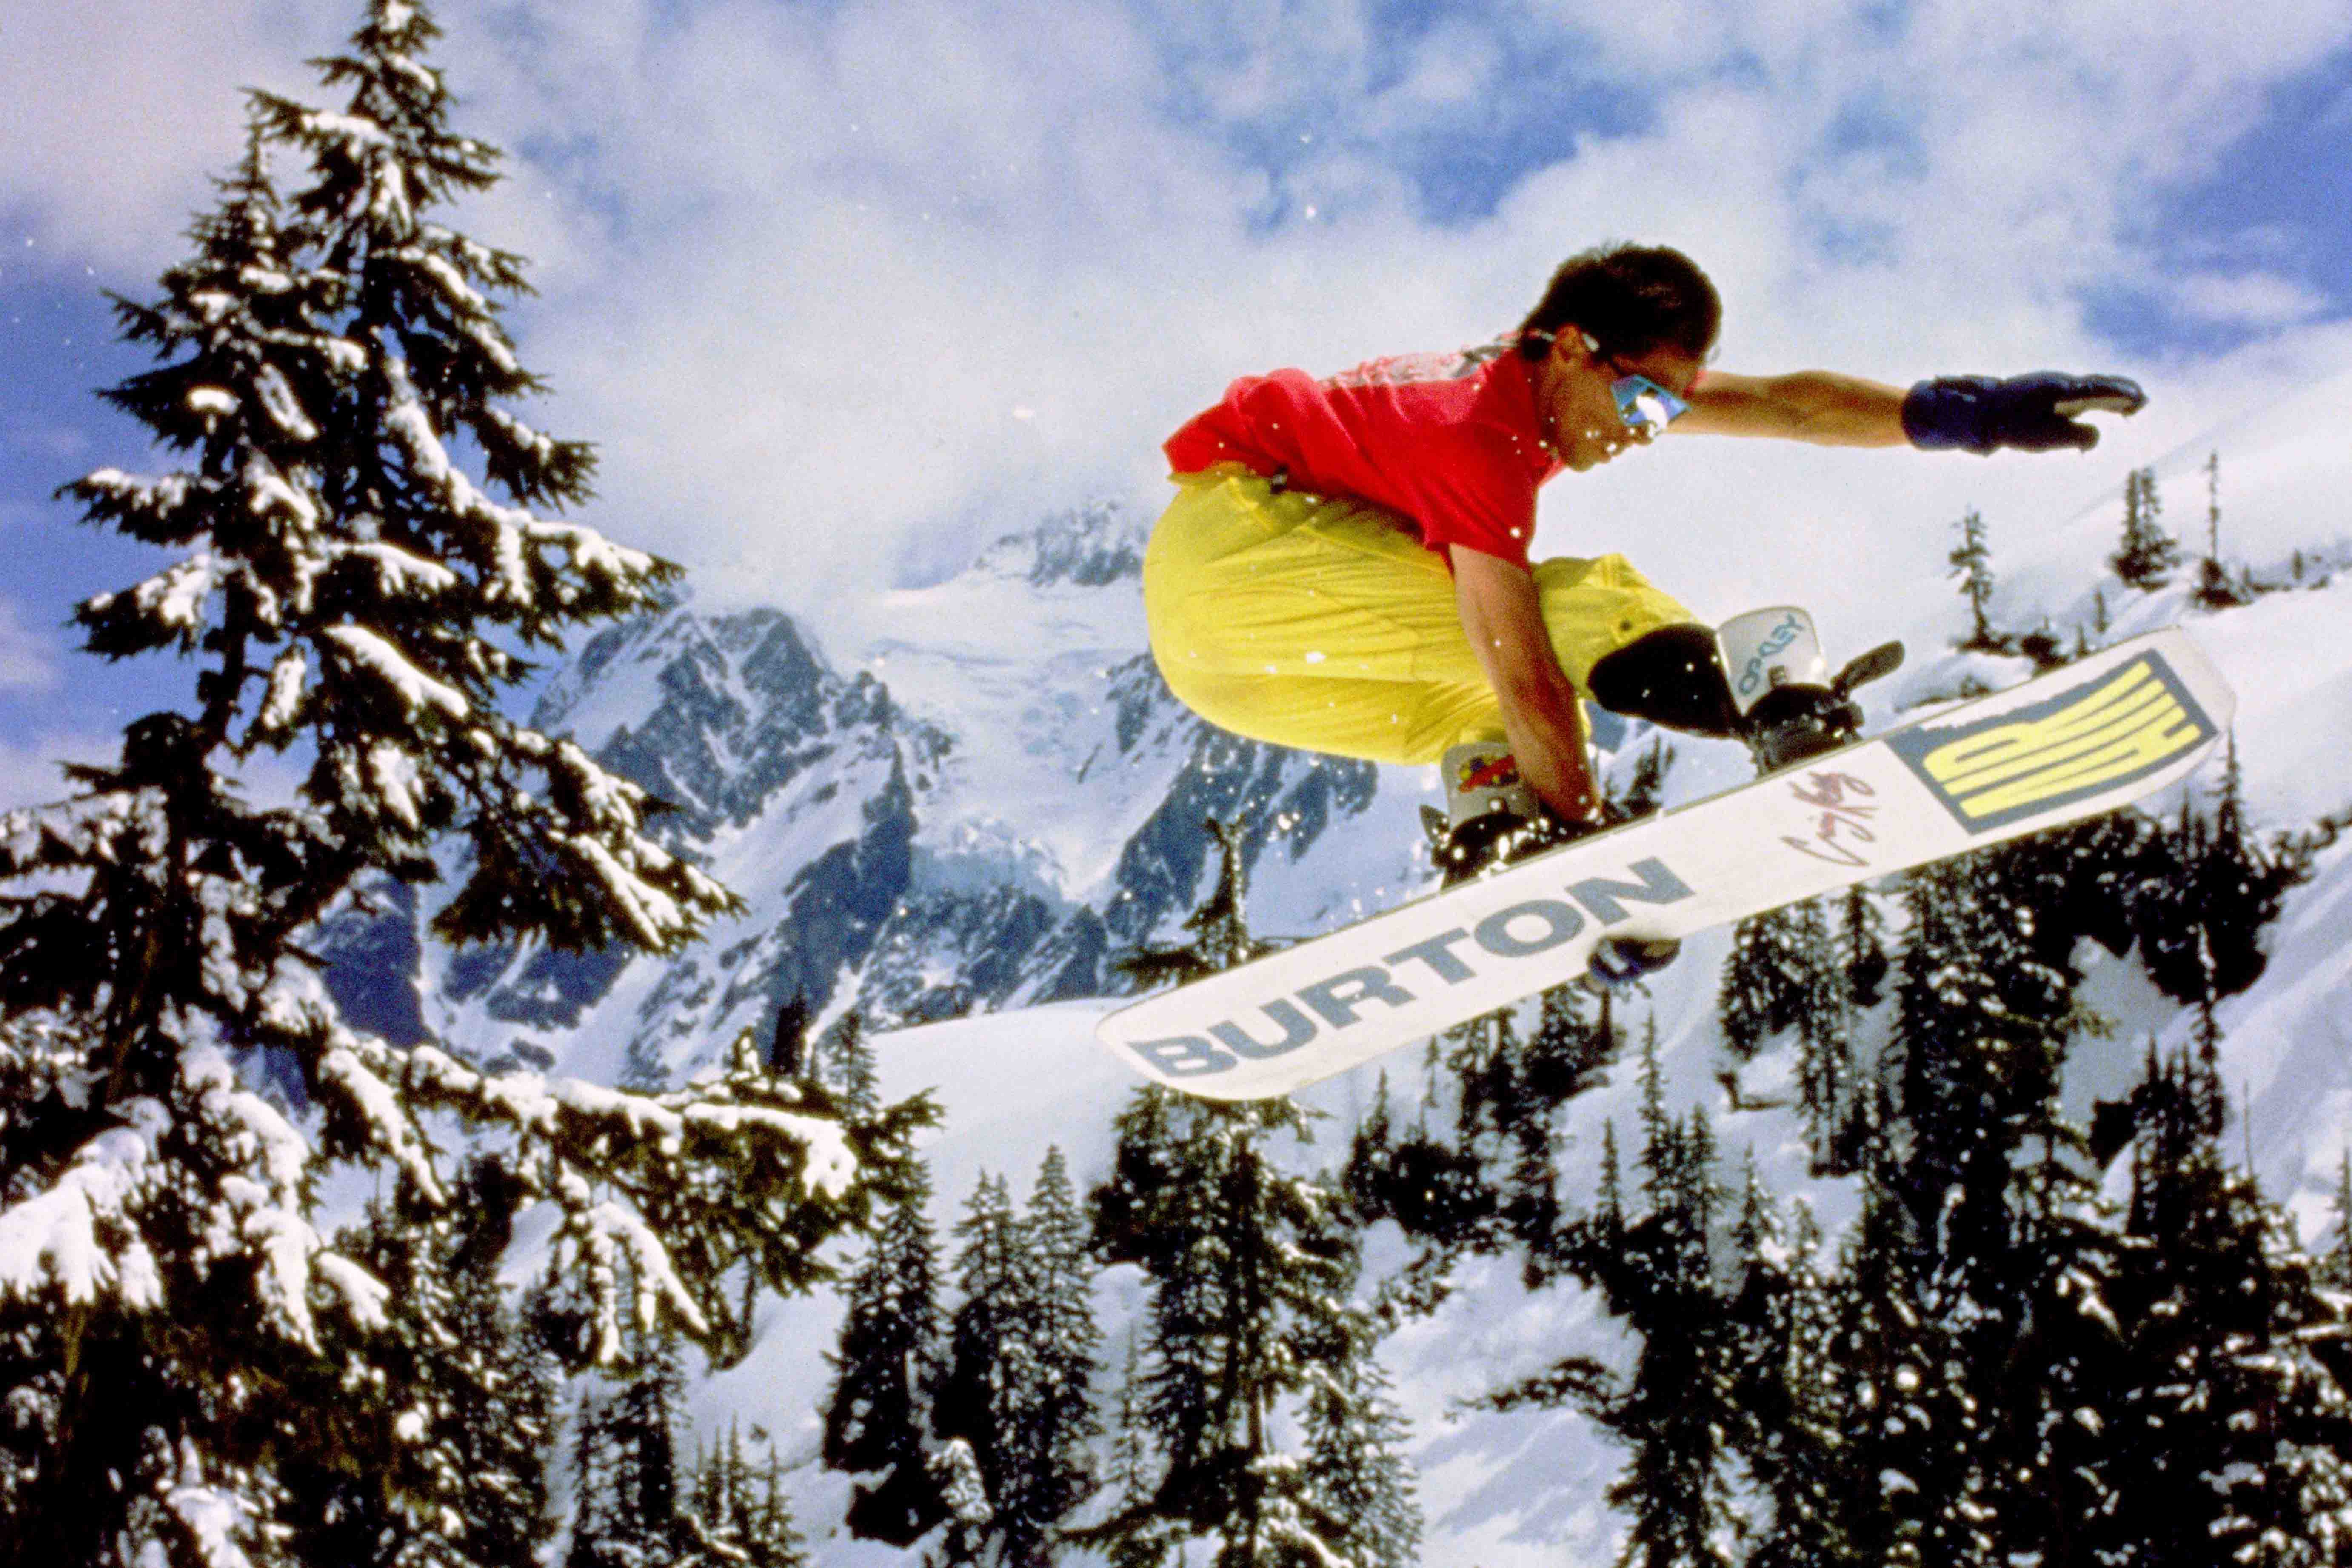 23 Things Of Burton Snowboards バートンを知るための23のキーワード Vol 1 Houyhnhnm フイナム